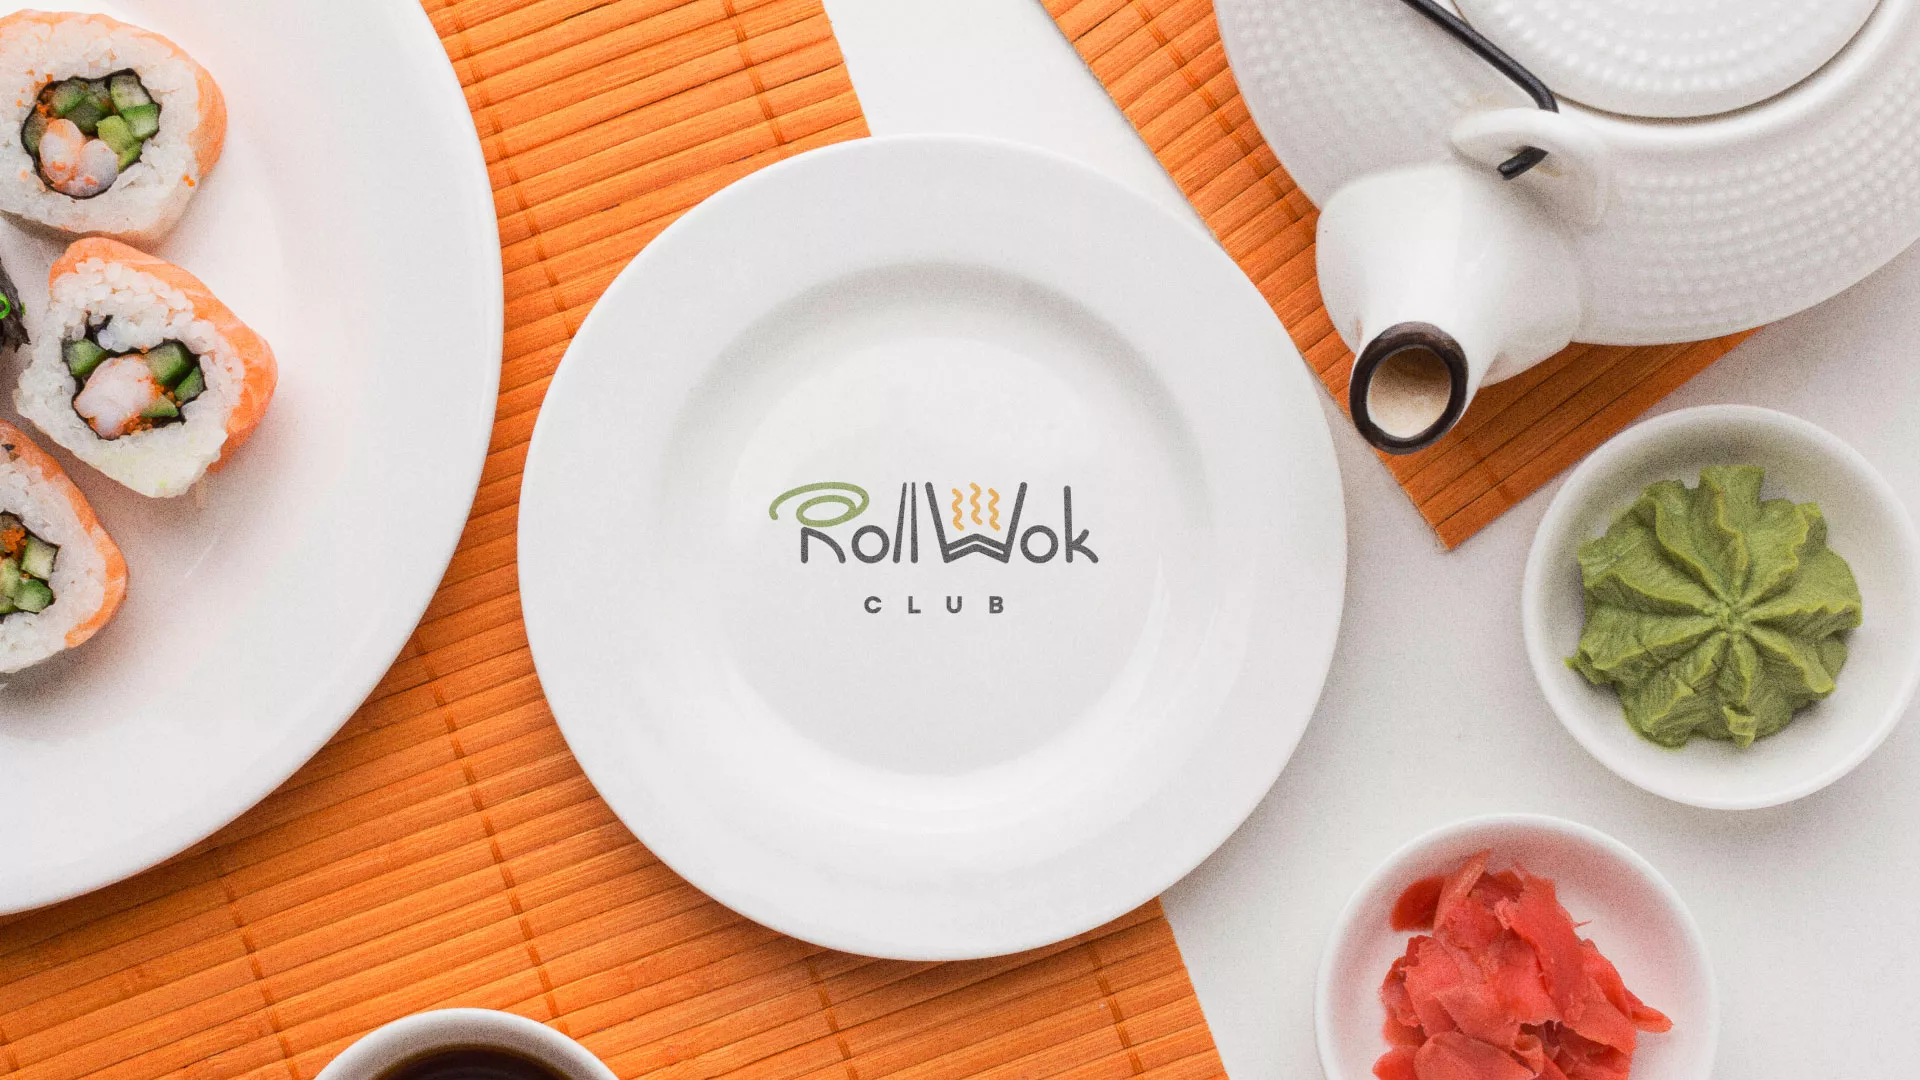 Разработка логотипа и фирменного стиля суши-бара «Roll Wok Club» в Плёсе